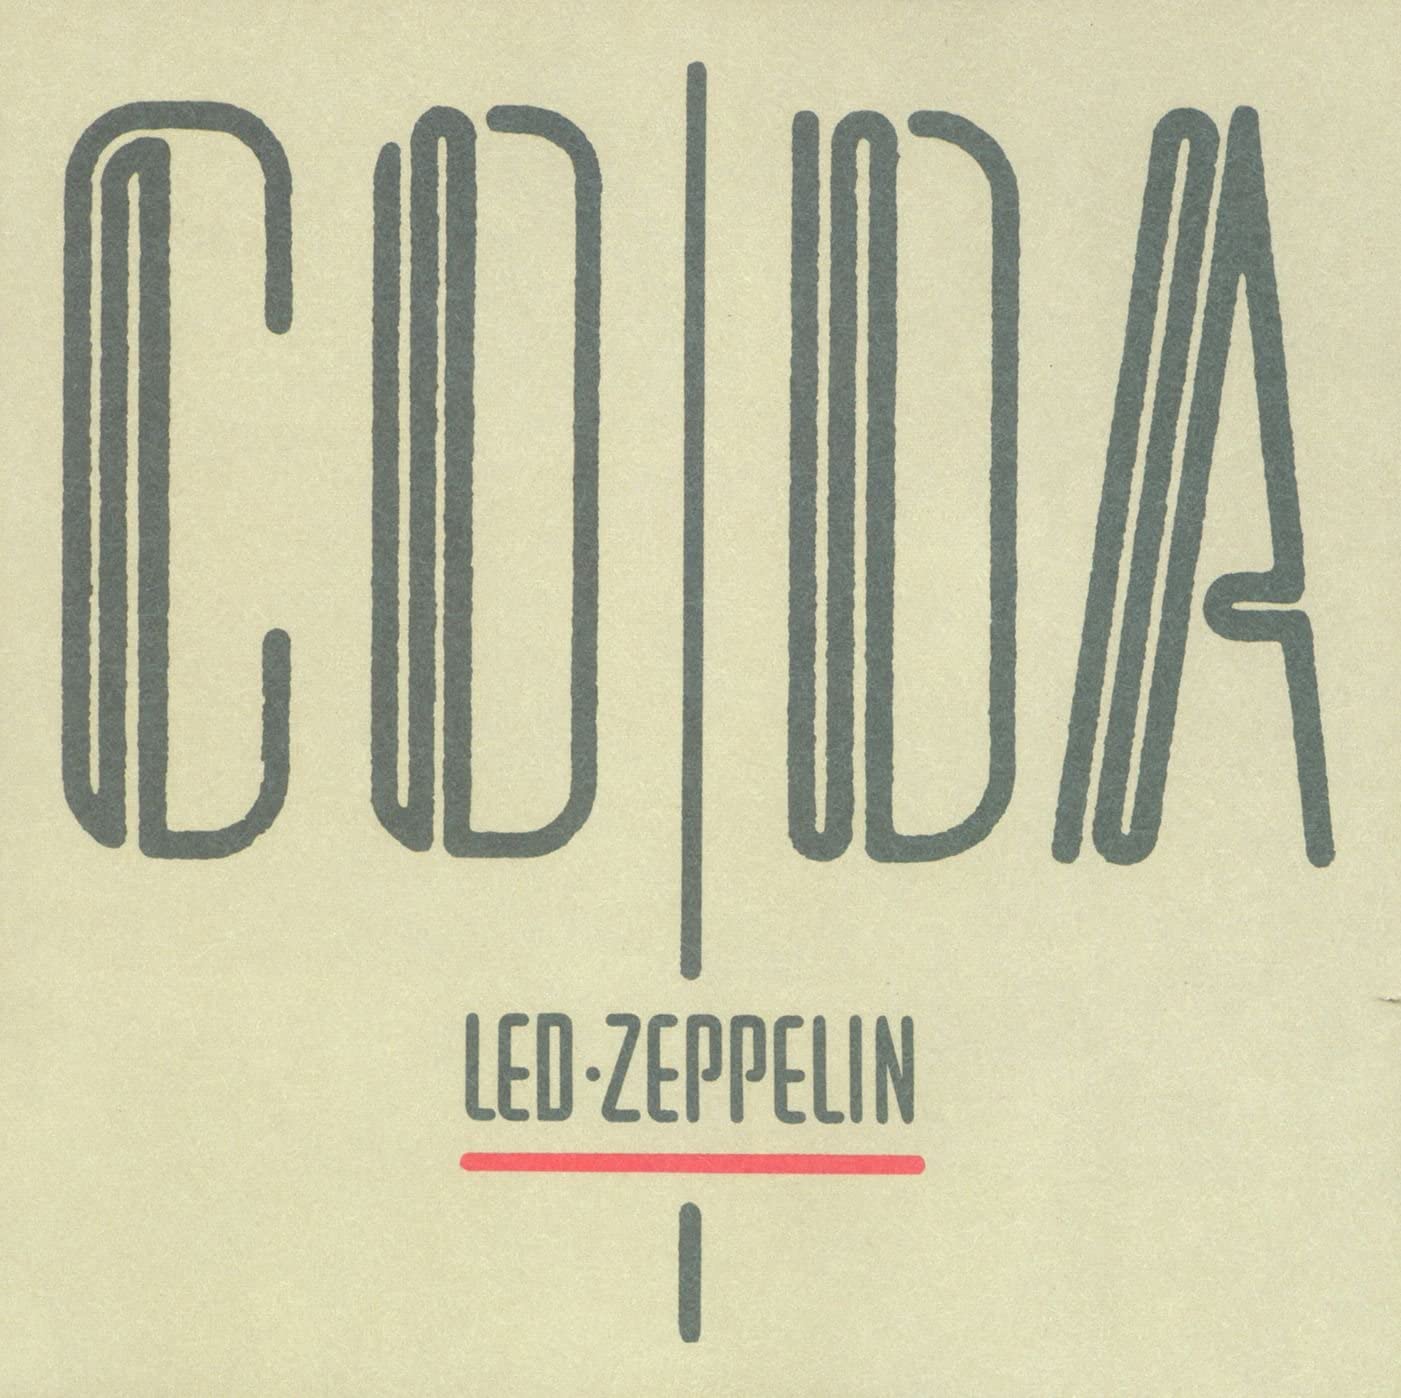 Coda | Led Zeppelin image1